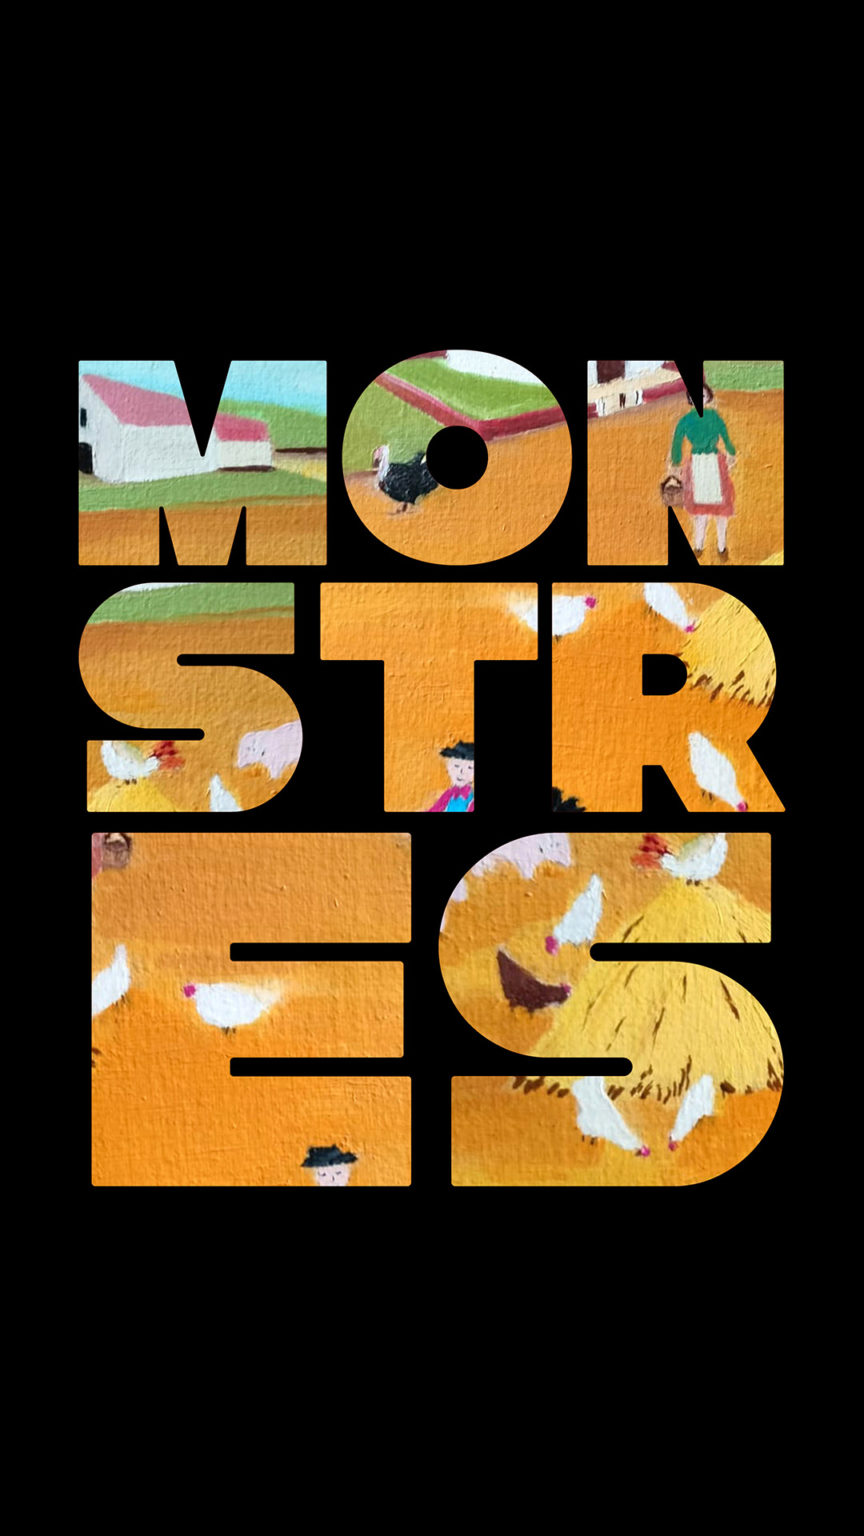 Illustration du titre du spectacle. Derrière le mot "monstre", on voit un dessin d'enfant très coloré représentant une scène de vie à la ferme